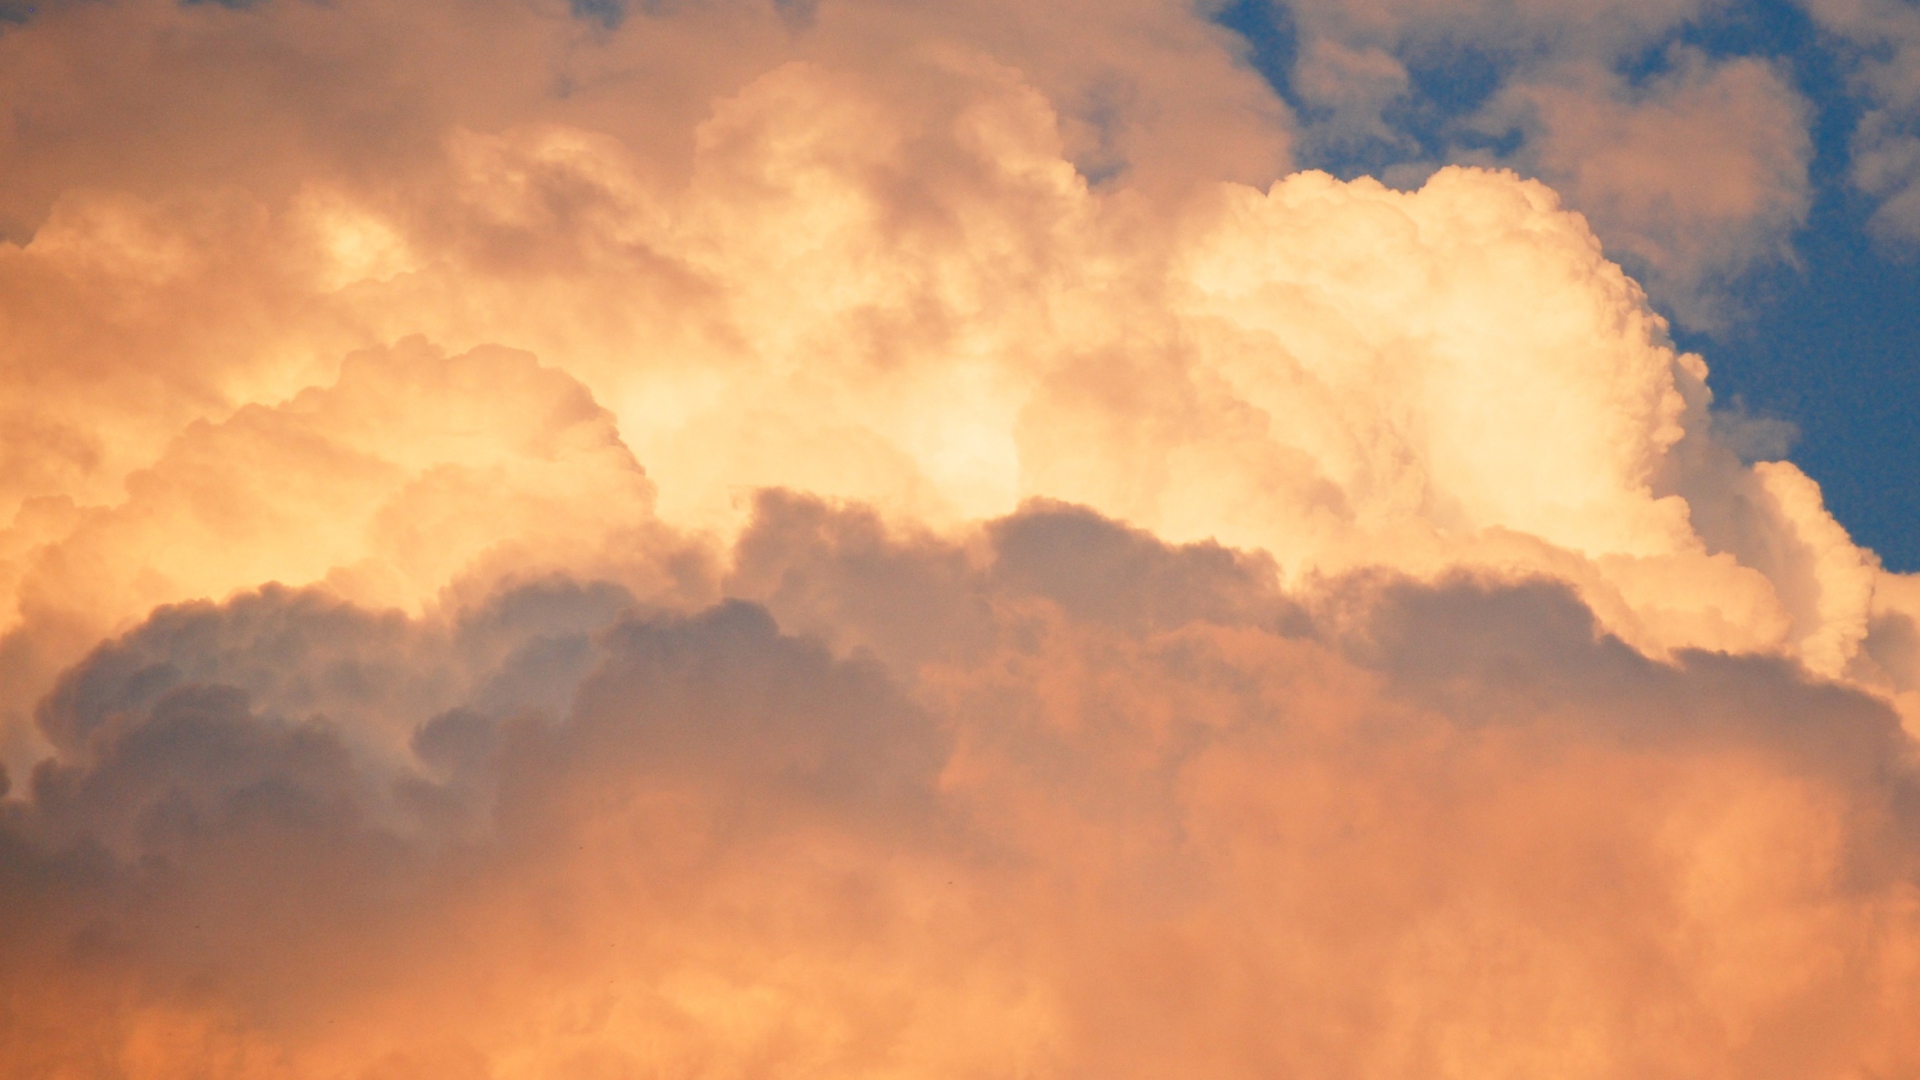 Обои Clouds At Sunset 1920x1080